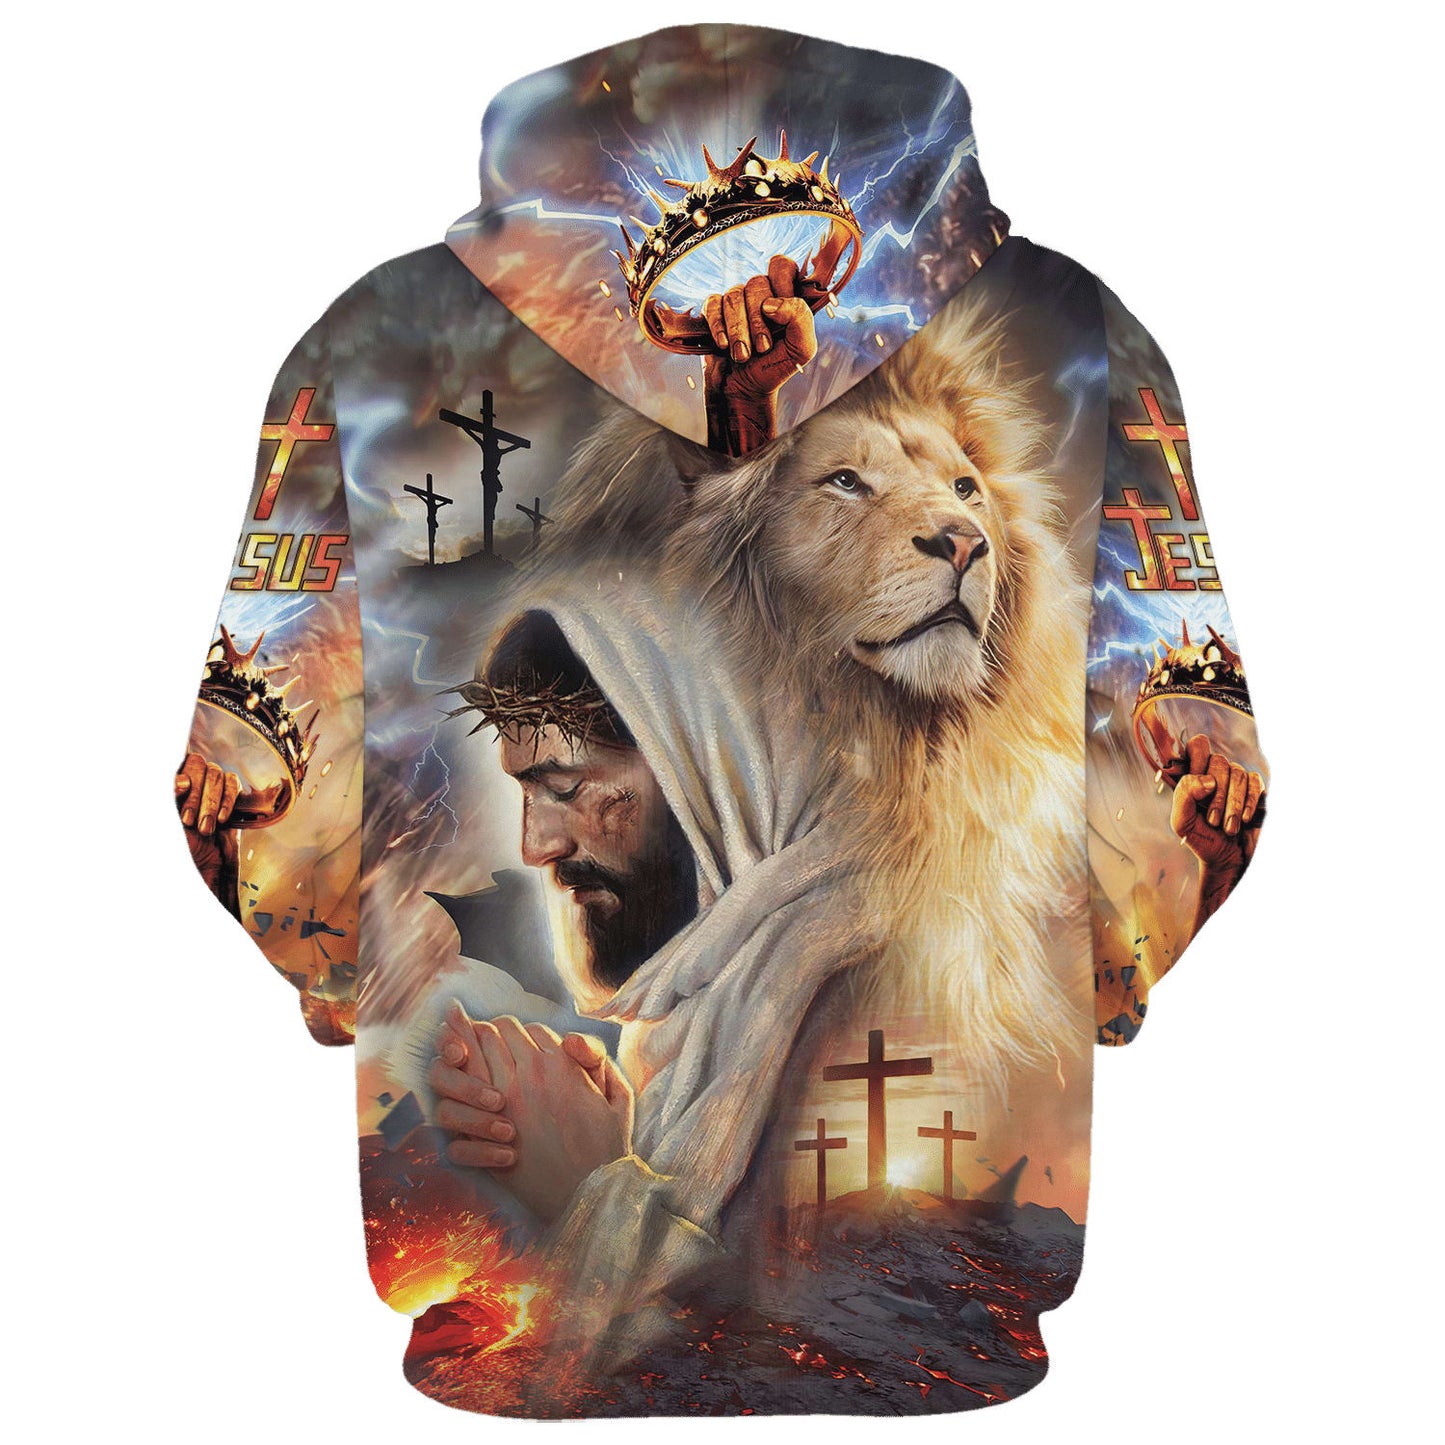 Jesus The Lion of Judah 3D Hoodies - Jesus Hoodie - Men & Women Christian Hoodie - 3D Printed Hoodie